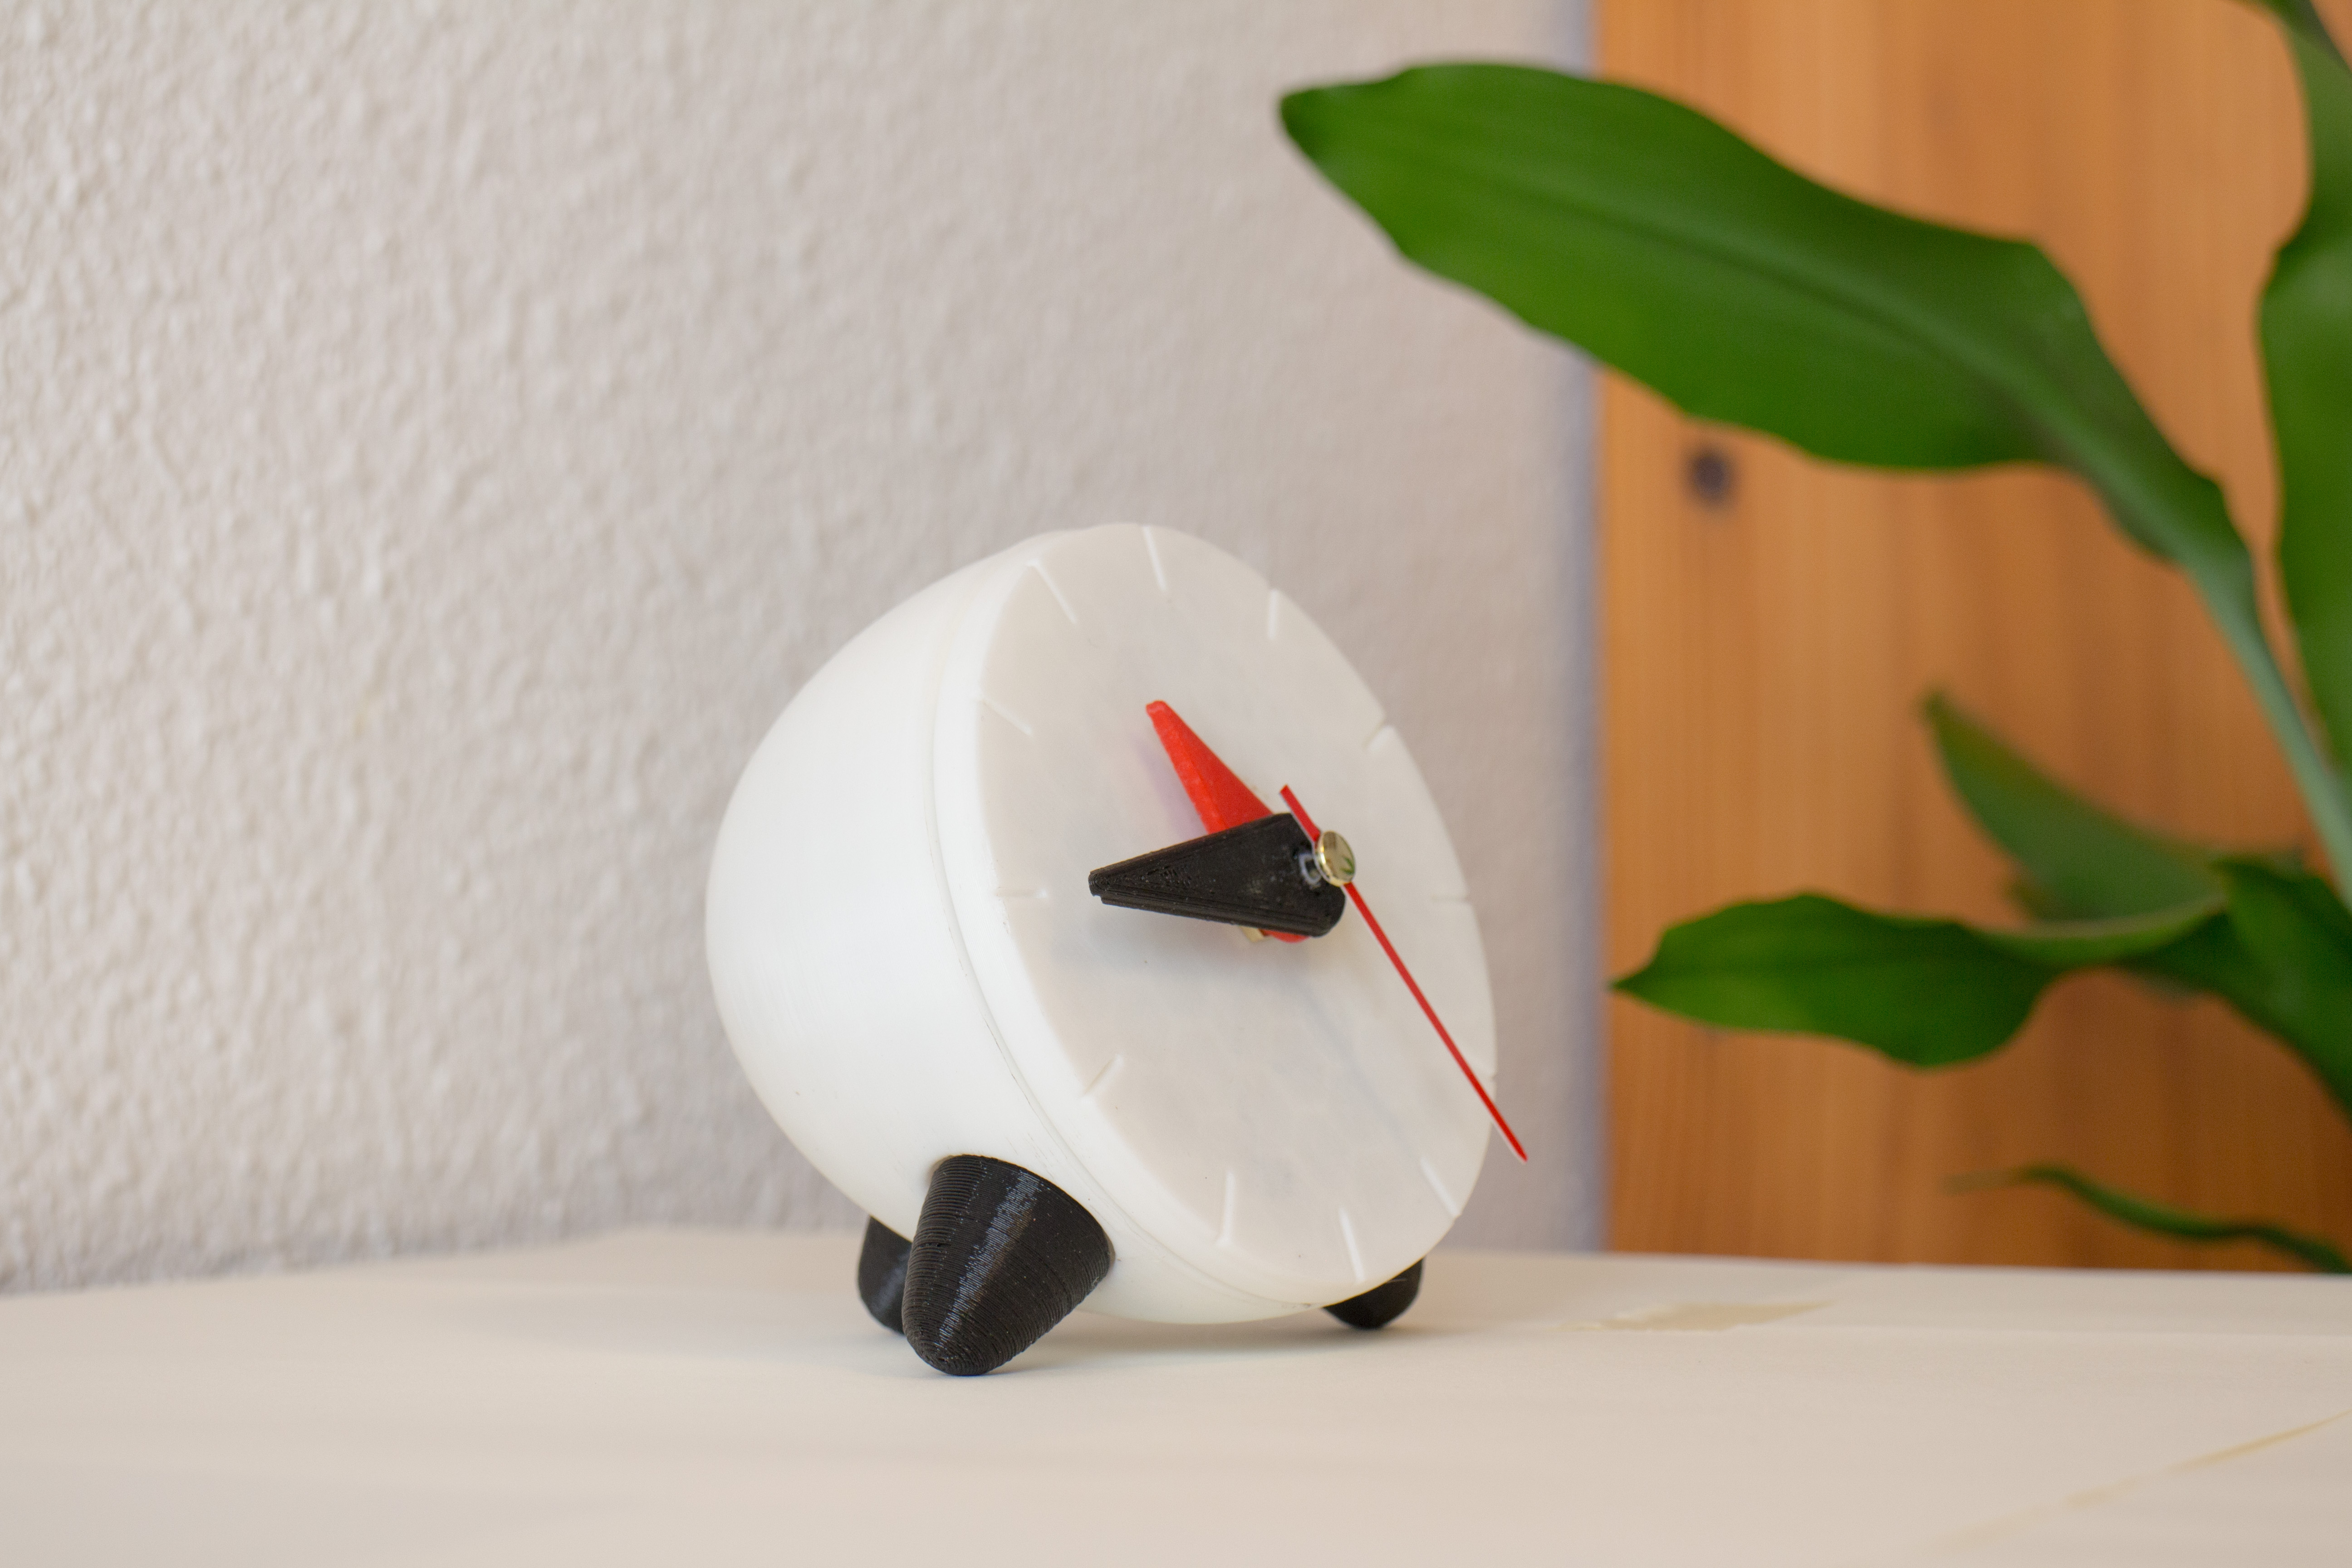 3D printed clock